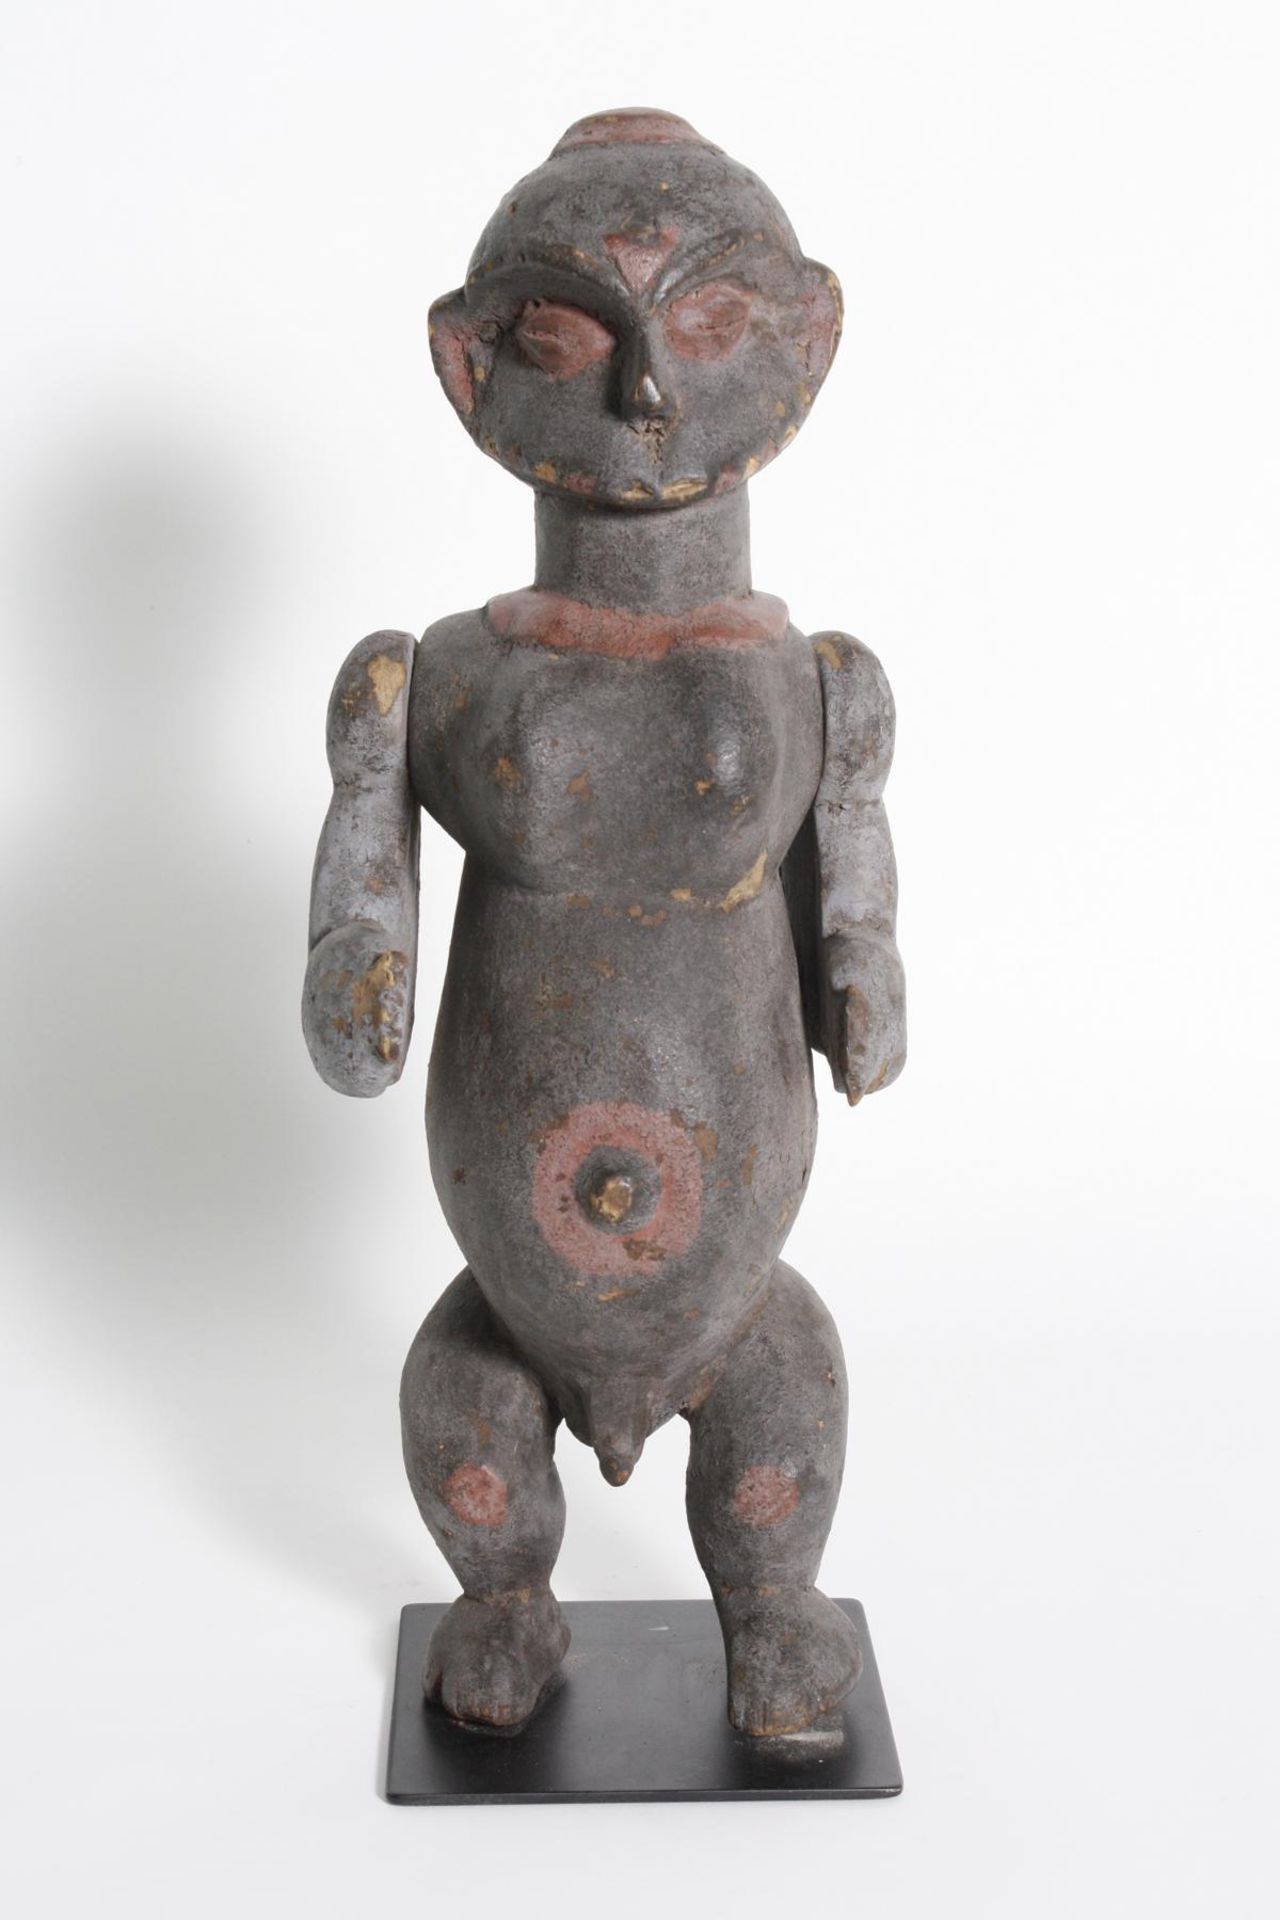 Männliche Marionette, Eket, Nigeria, 1. Hälfte 20. Jh.Holz geschnitzte männliche Figur mit roter